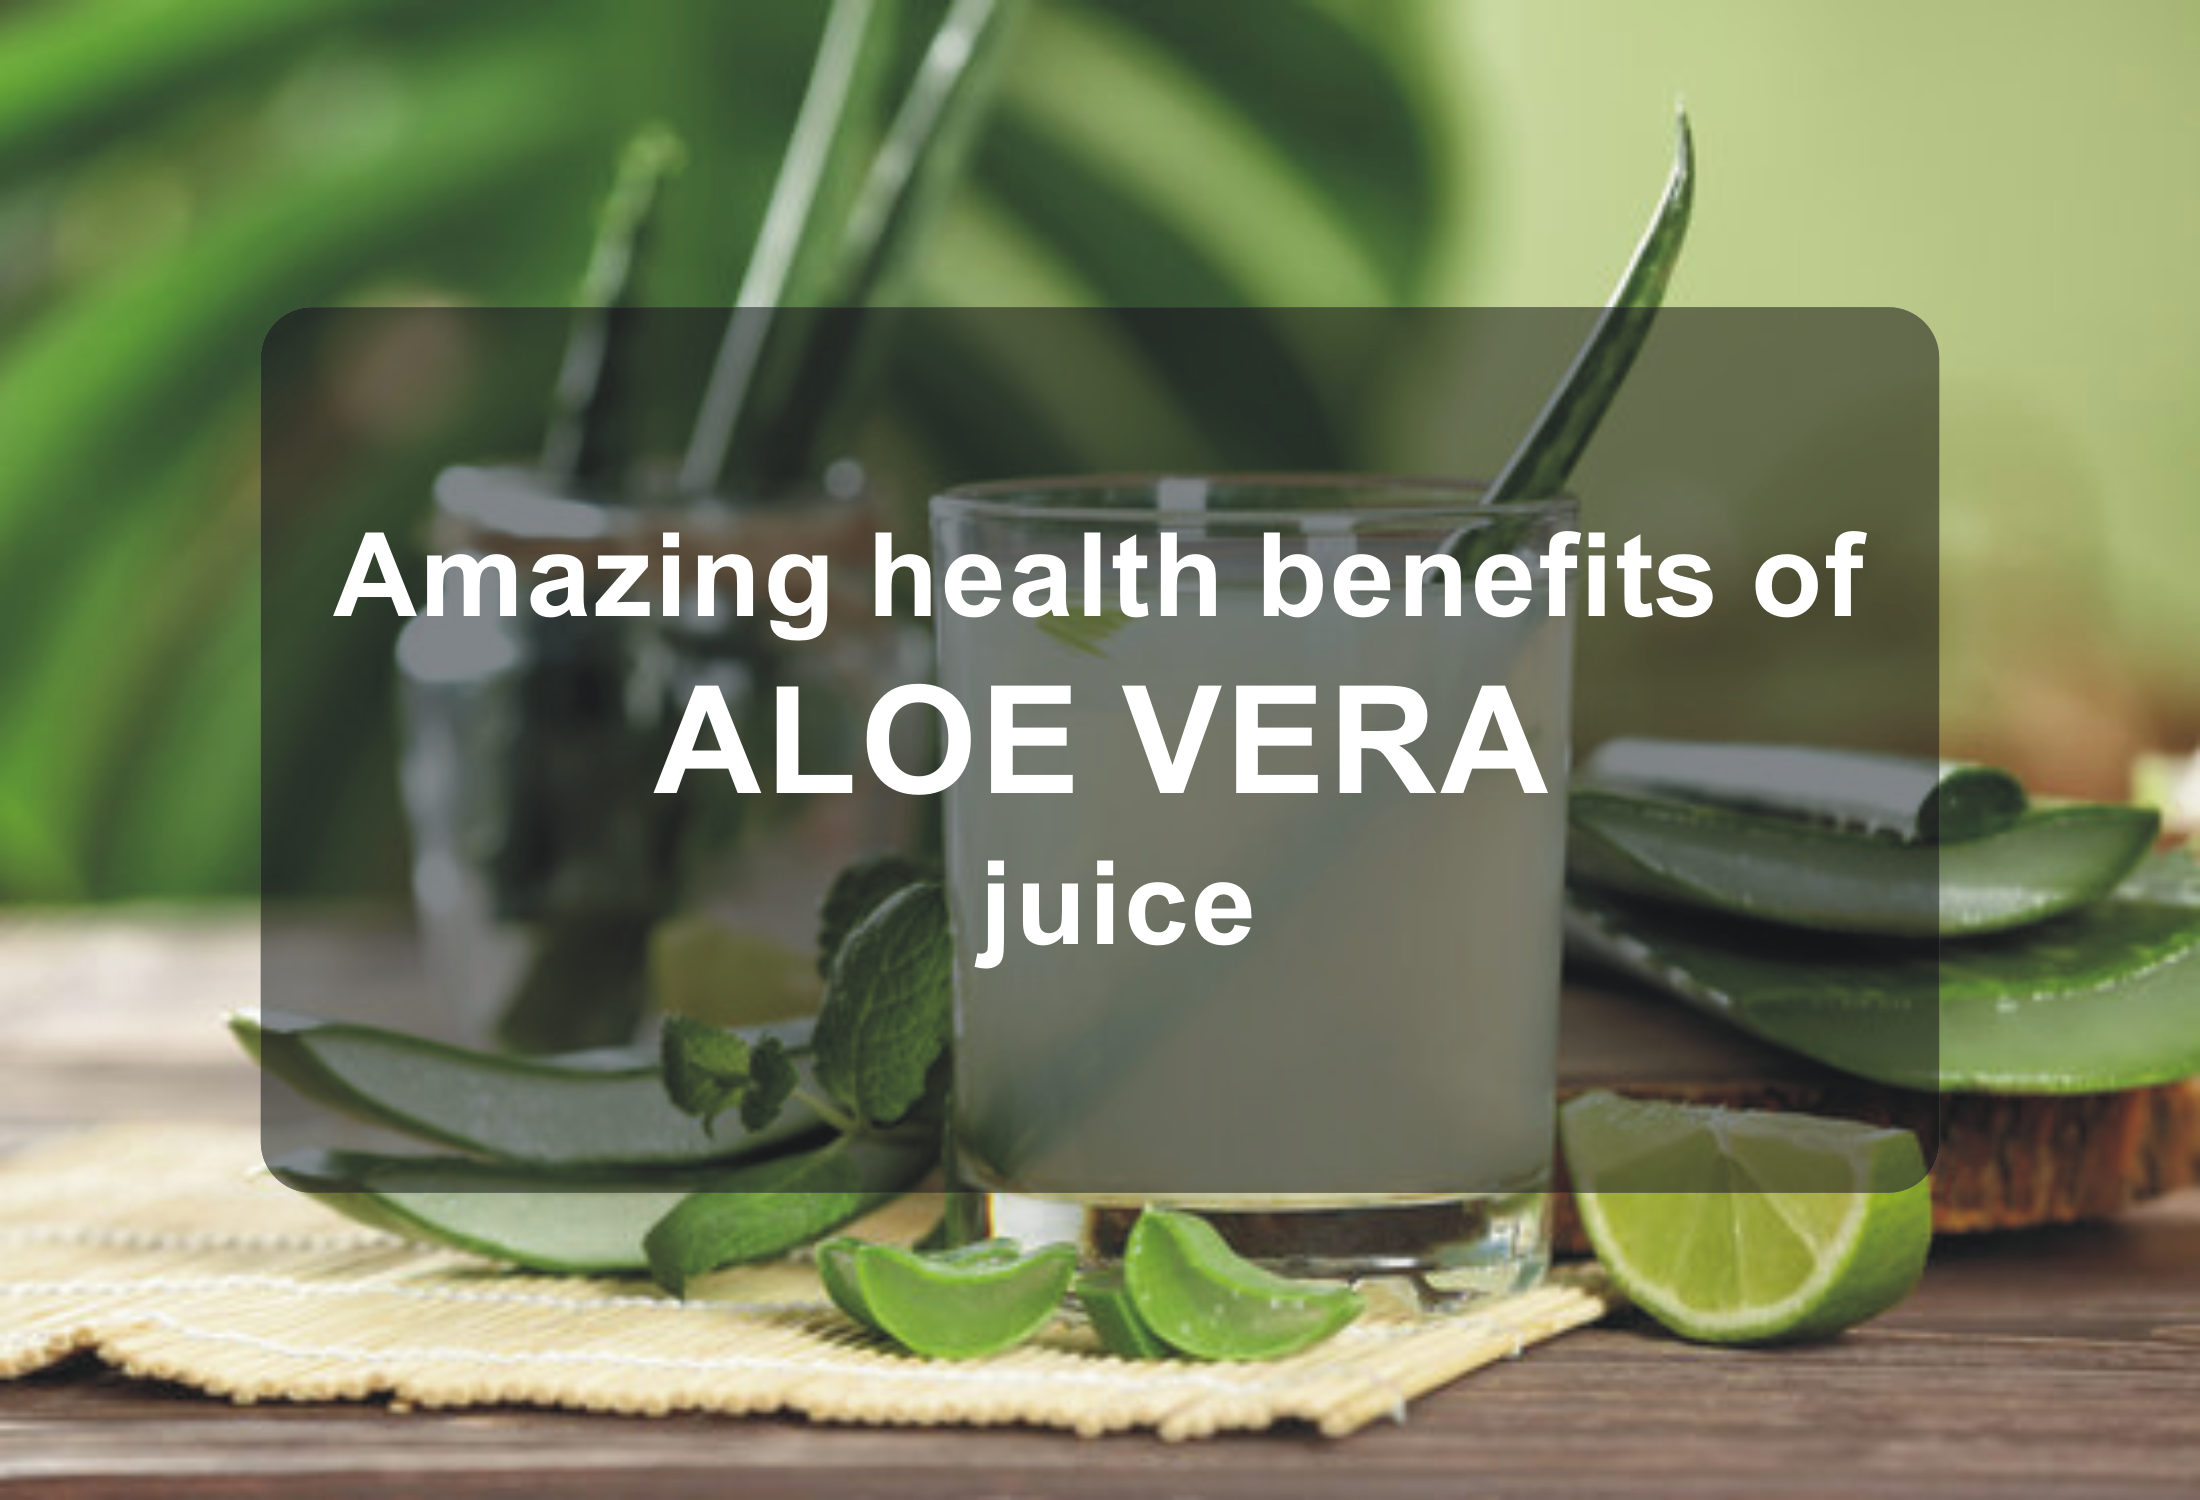 Amazing health benefits of aloe vera juice